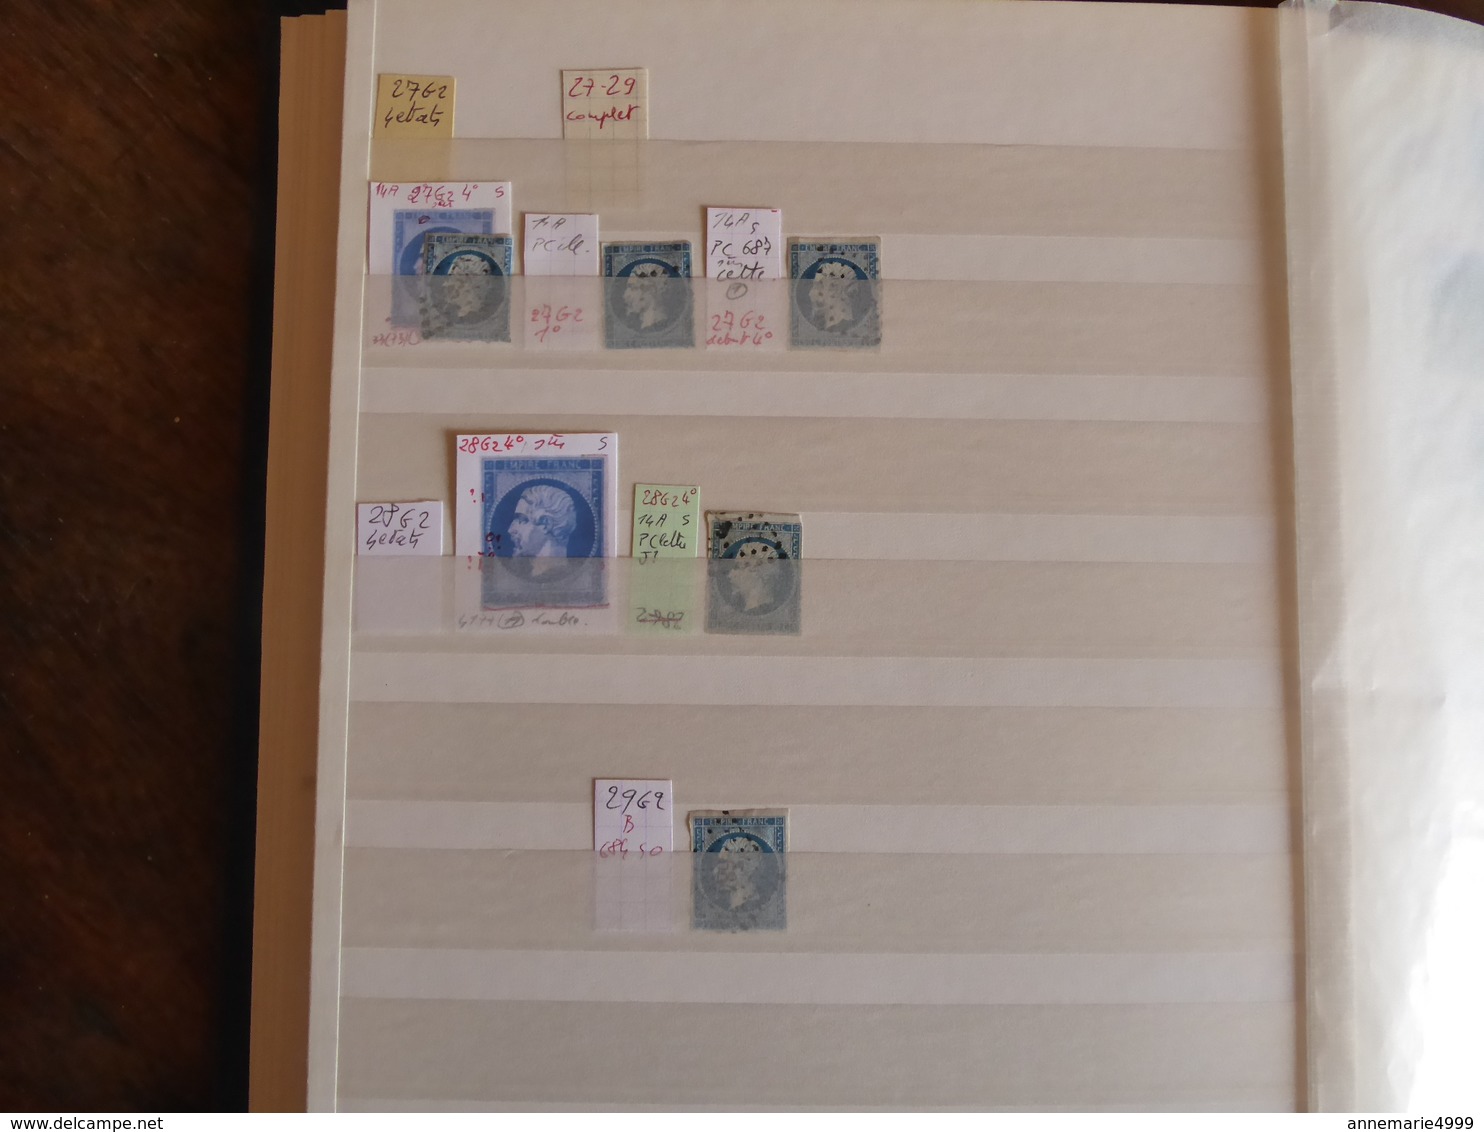 FRANCE PLANCHAGE Classeur de stock  Plus de 800 timbres du N°14 Napoléon III Panneau G2 tous identifiés Pour spécialiste